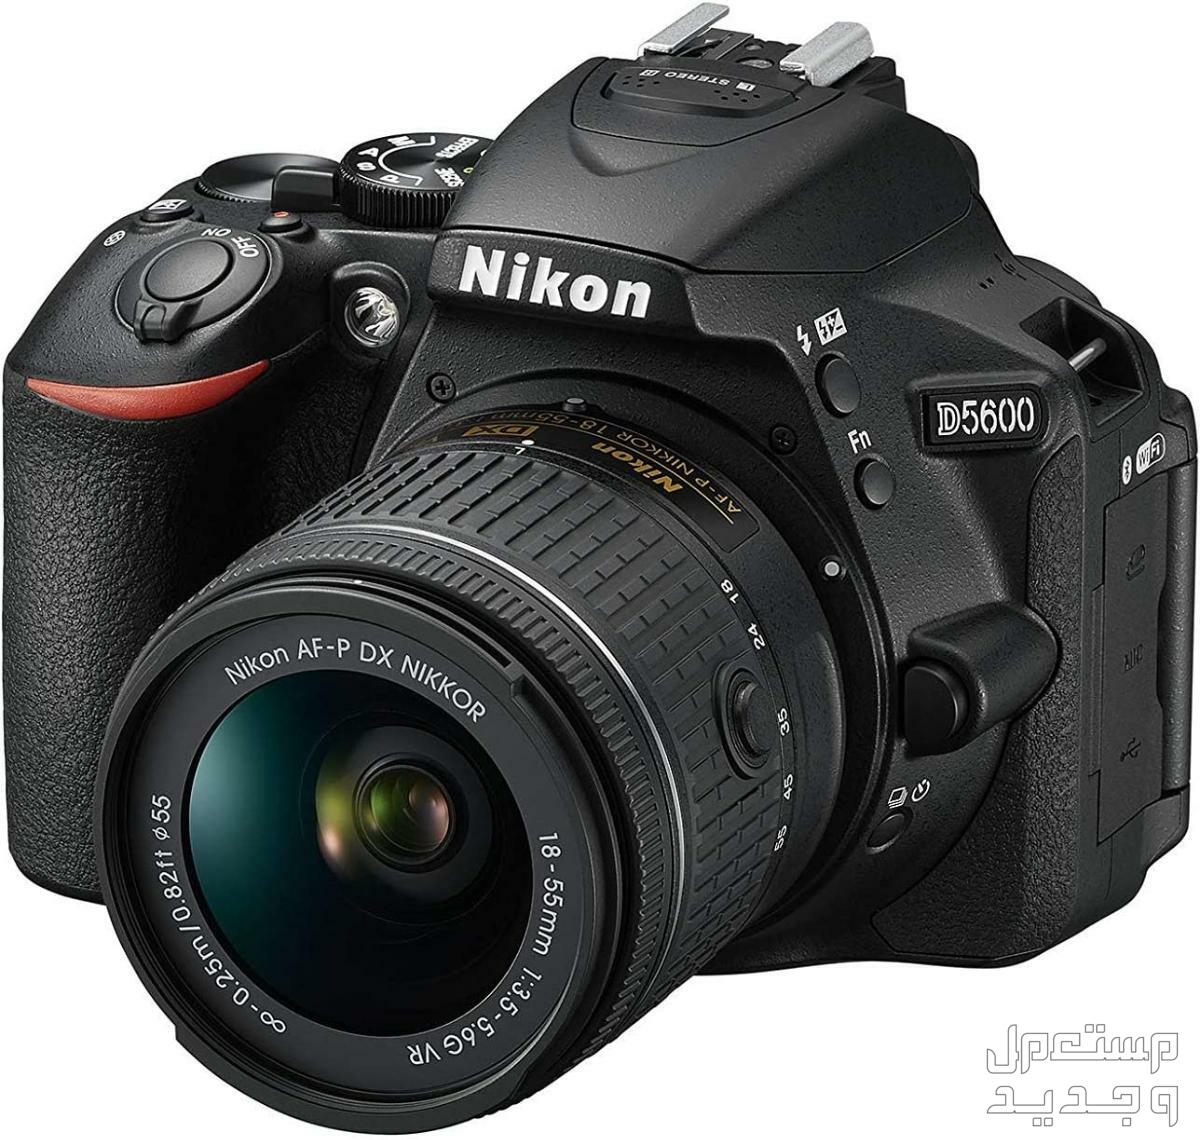 10 كاميرات تصوير ماركات عالمية بأسعار رخيصة في لبنان كاميرا Nikon D5600